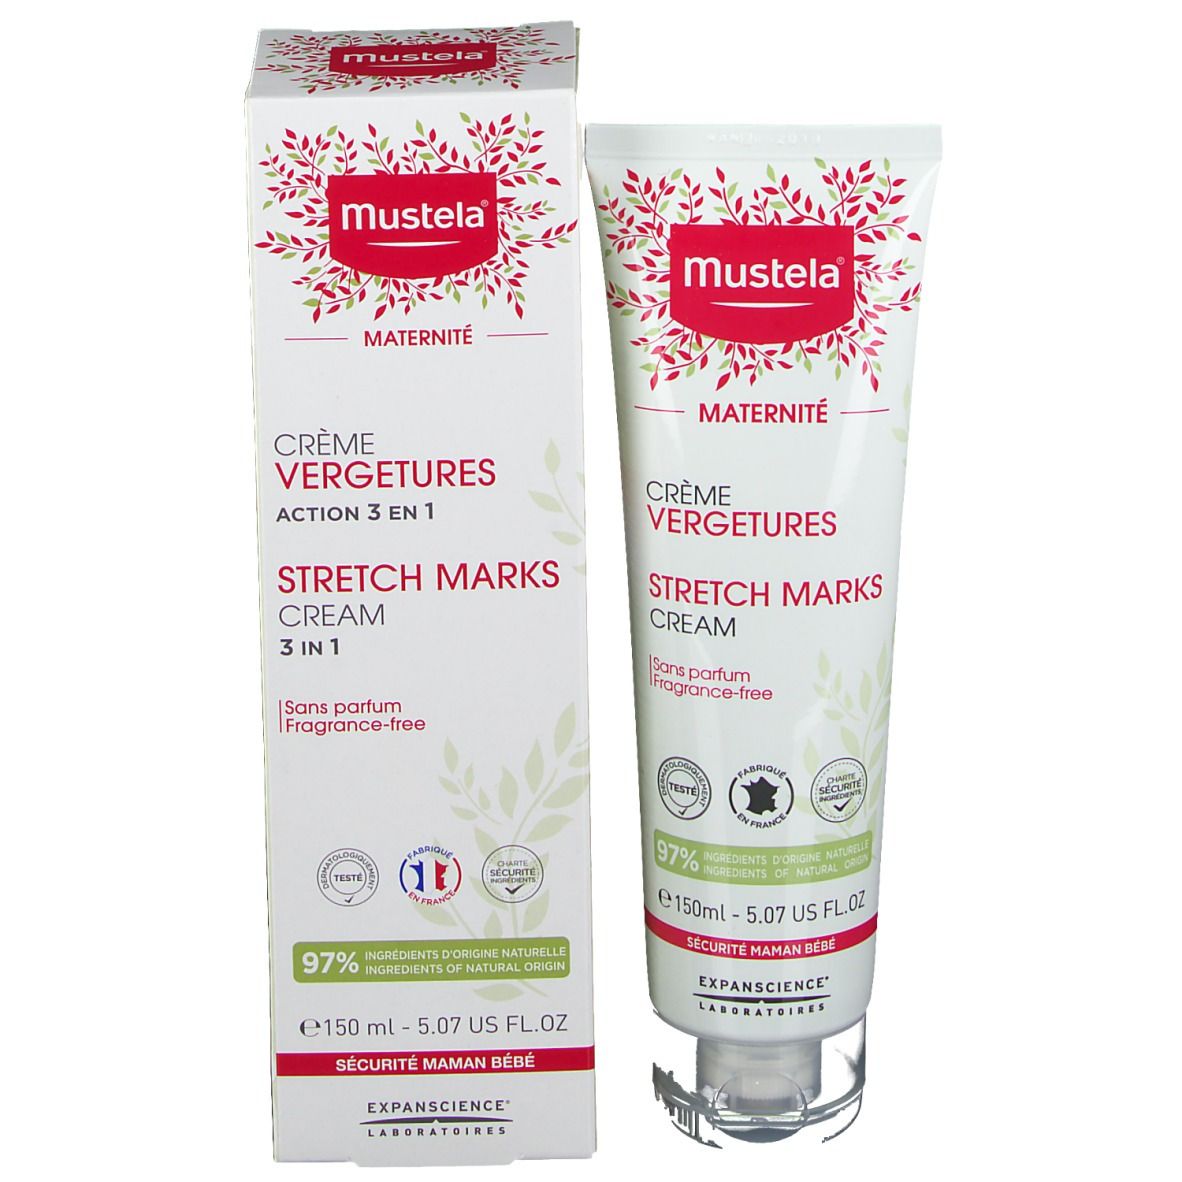  Mustela® Crème Vergetures Action 3 en 1 Sans Parfum